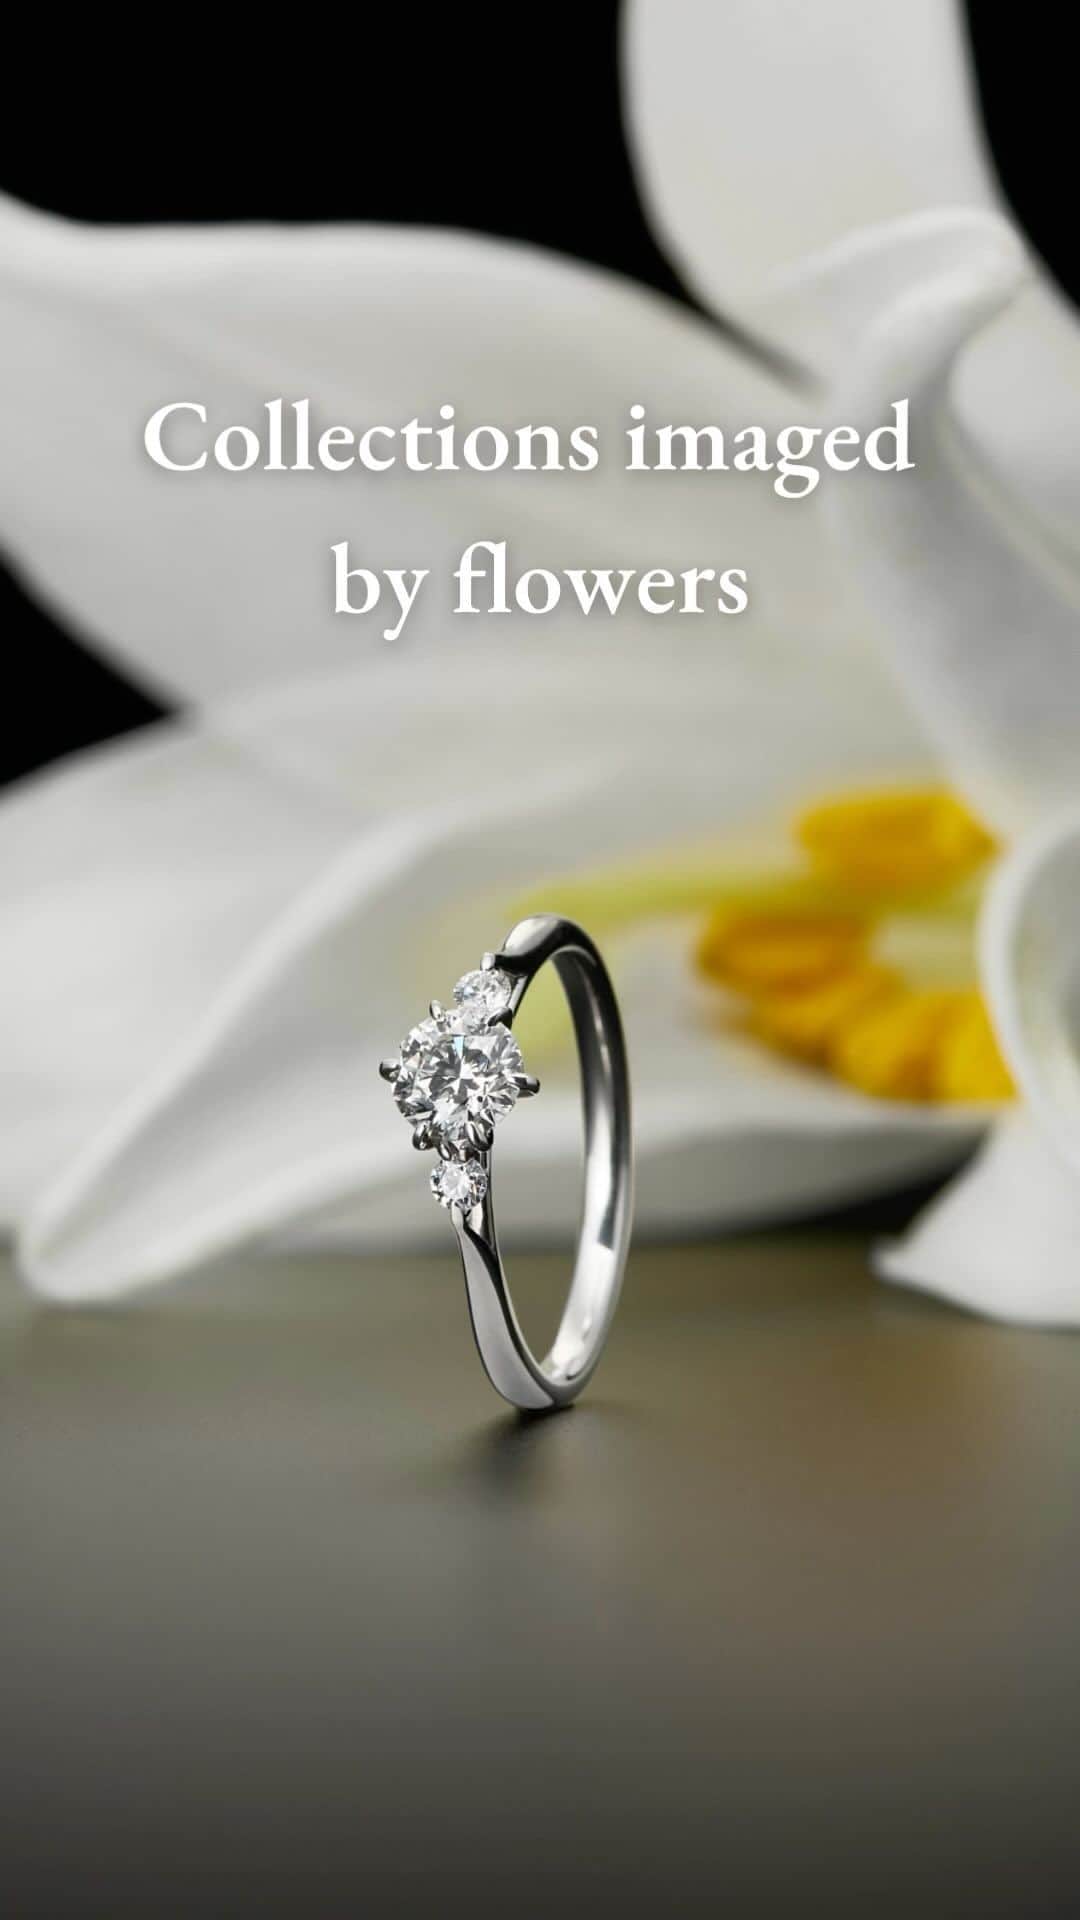 ラザール ダイヤモンド ブティック公式 | 婚約・結婚指輪のインスタグラム：「Collections imaged by flowers ￣￣￣￣￣￣￣￣￣￣￣￣￣￣￣ 花嫁の心をとらえて離さない 可憐でリュクスなフラワーモチーフの婚約指輪をご紹介。  指もとに愛の花を咲かせて。  #lazarediamond #ラザールダイヤモンド #婚約指輪 #エンゲージリング #NEWYORK #NYC #ダイヤモンド #ダイヤモンドリング #ブライダルリング #ブライダルリング専門店」